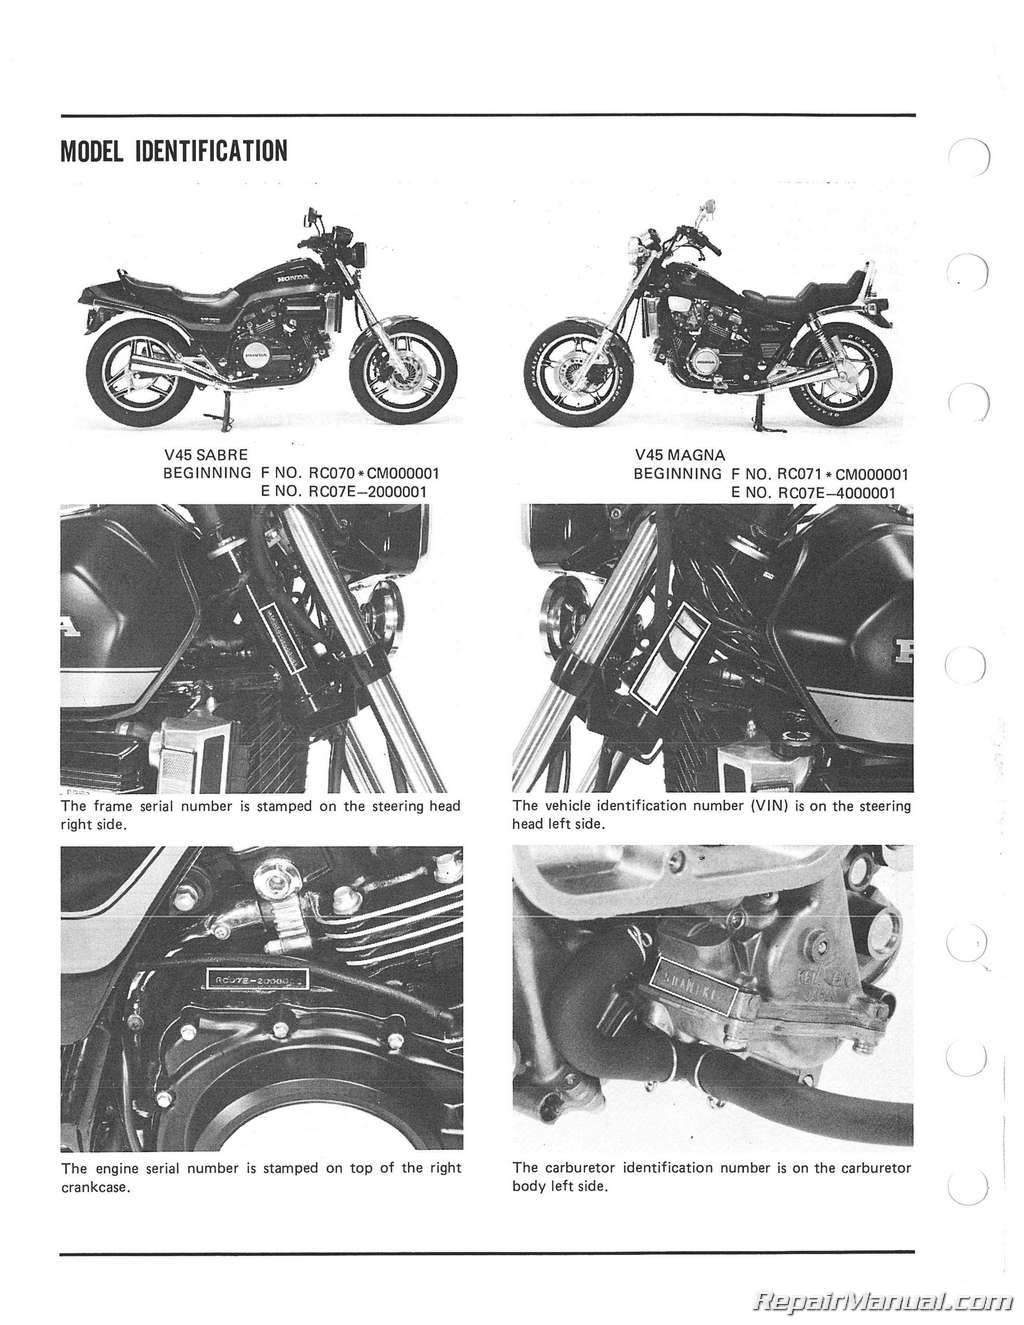 1982 Honda magna v45 owners manual #3